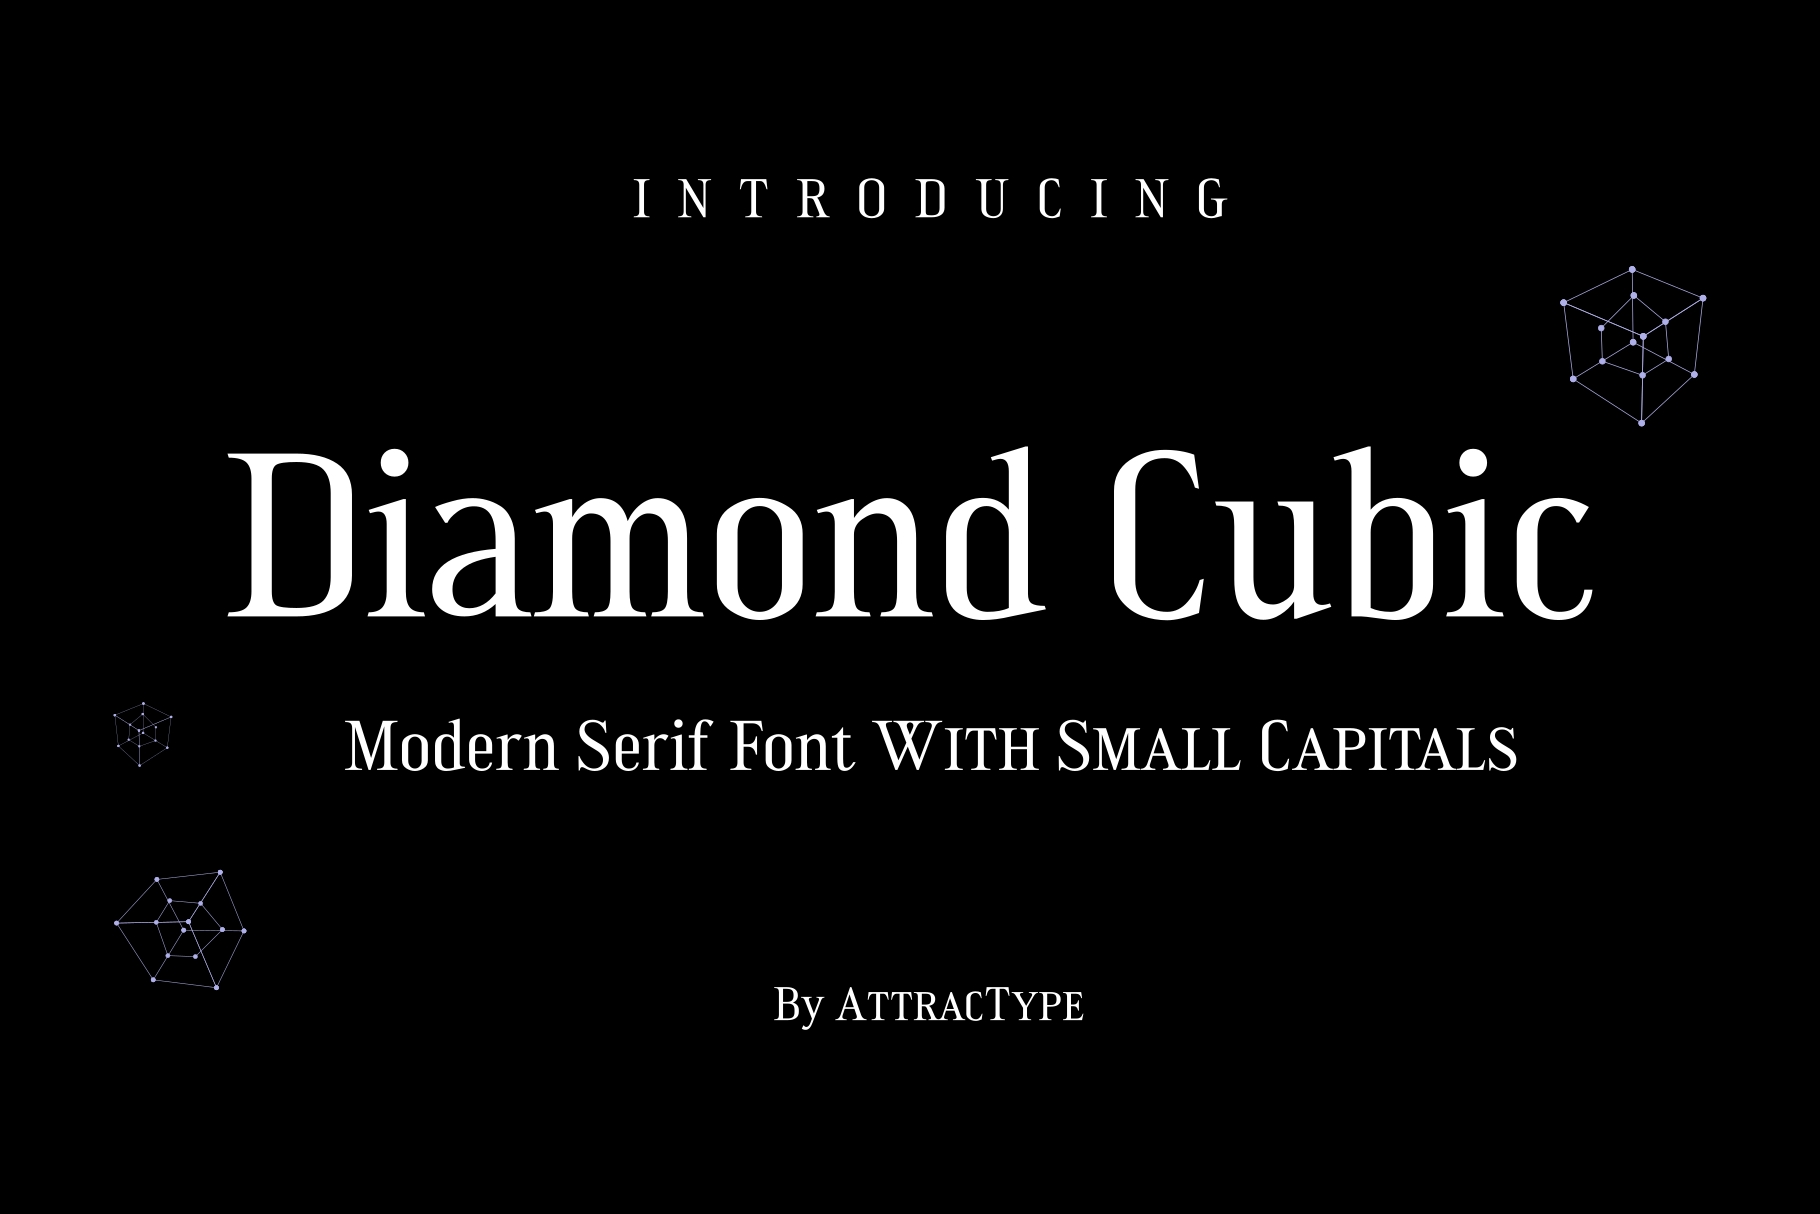 Diamond Cubic